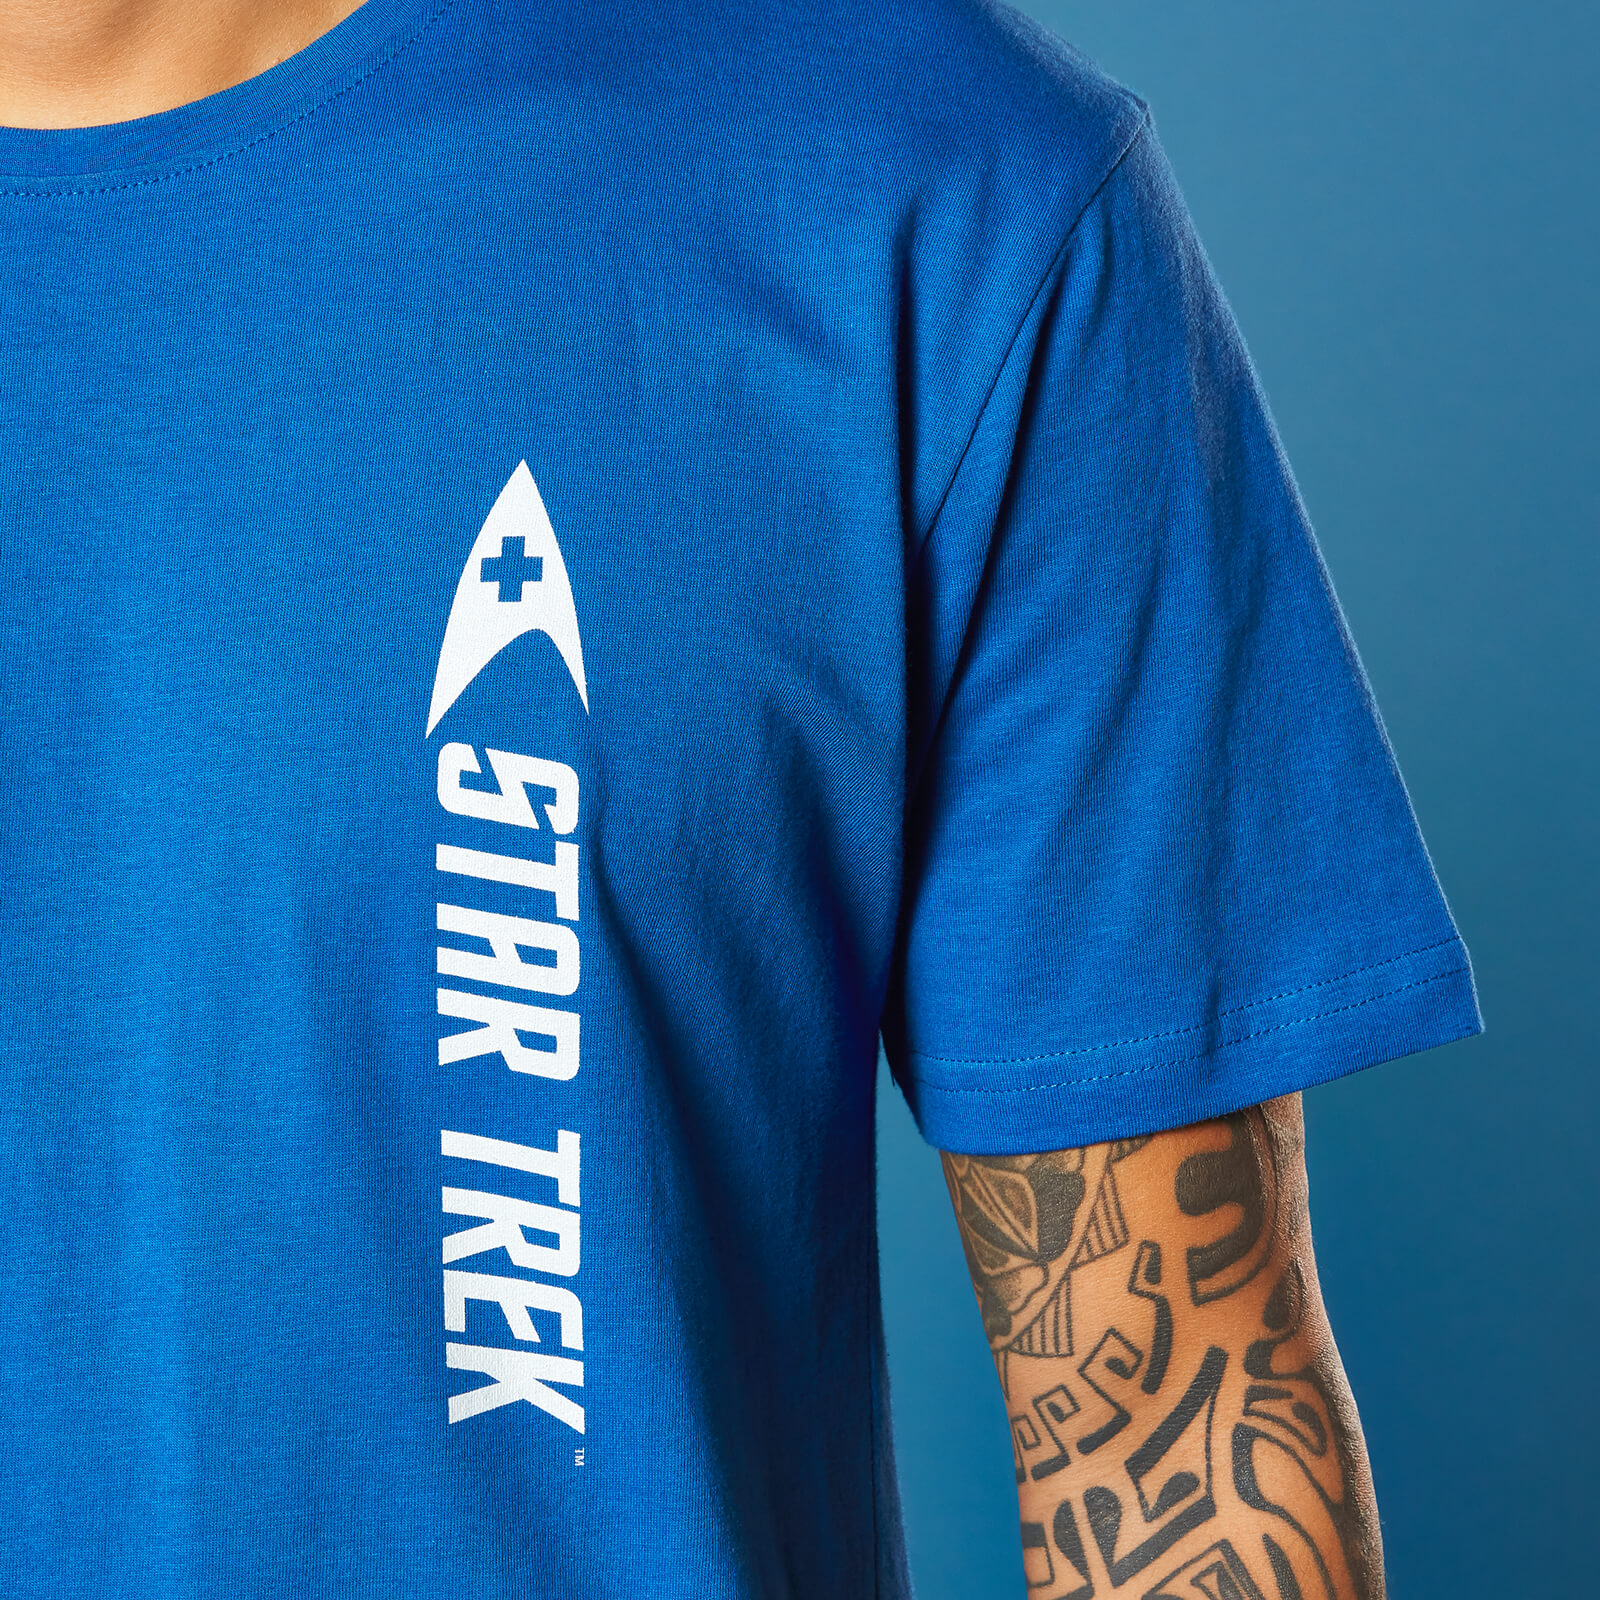 Medic Star Trek T-Shirt - Royal Blue - M - royal blue